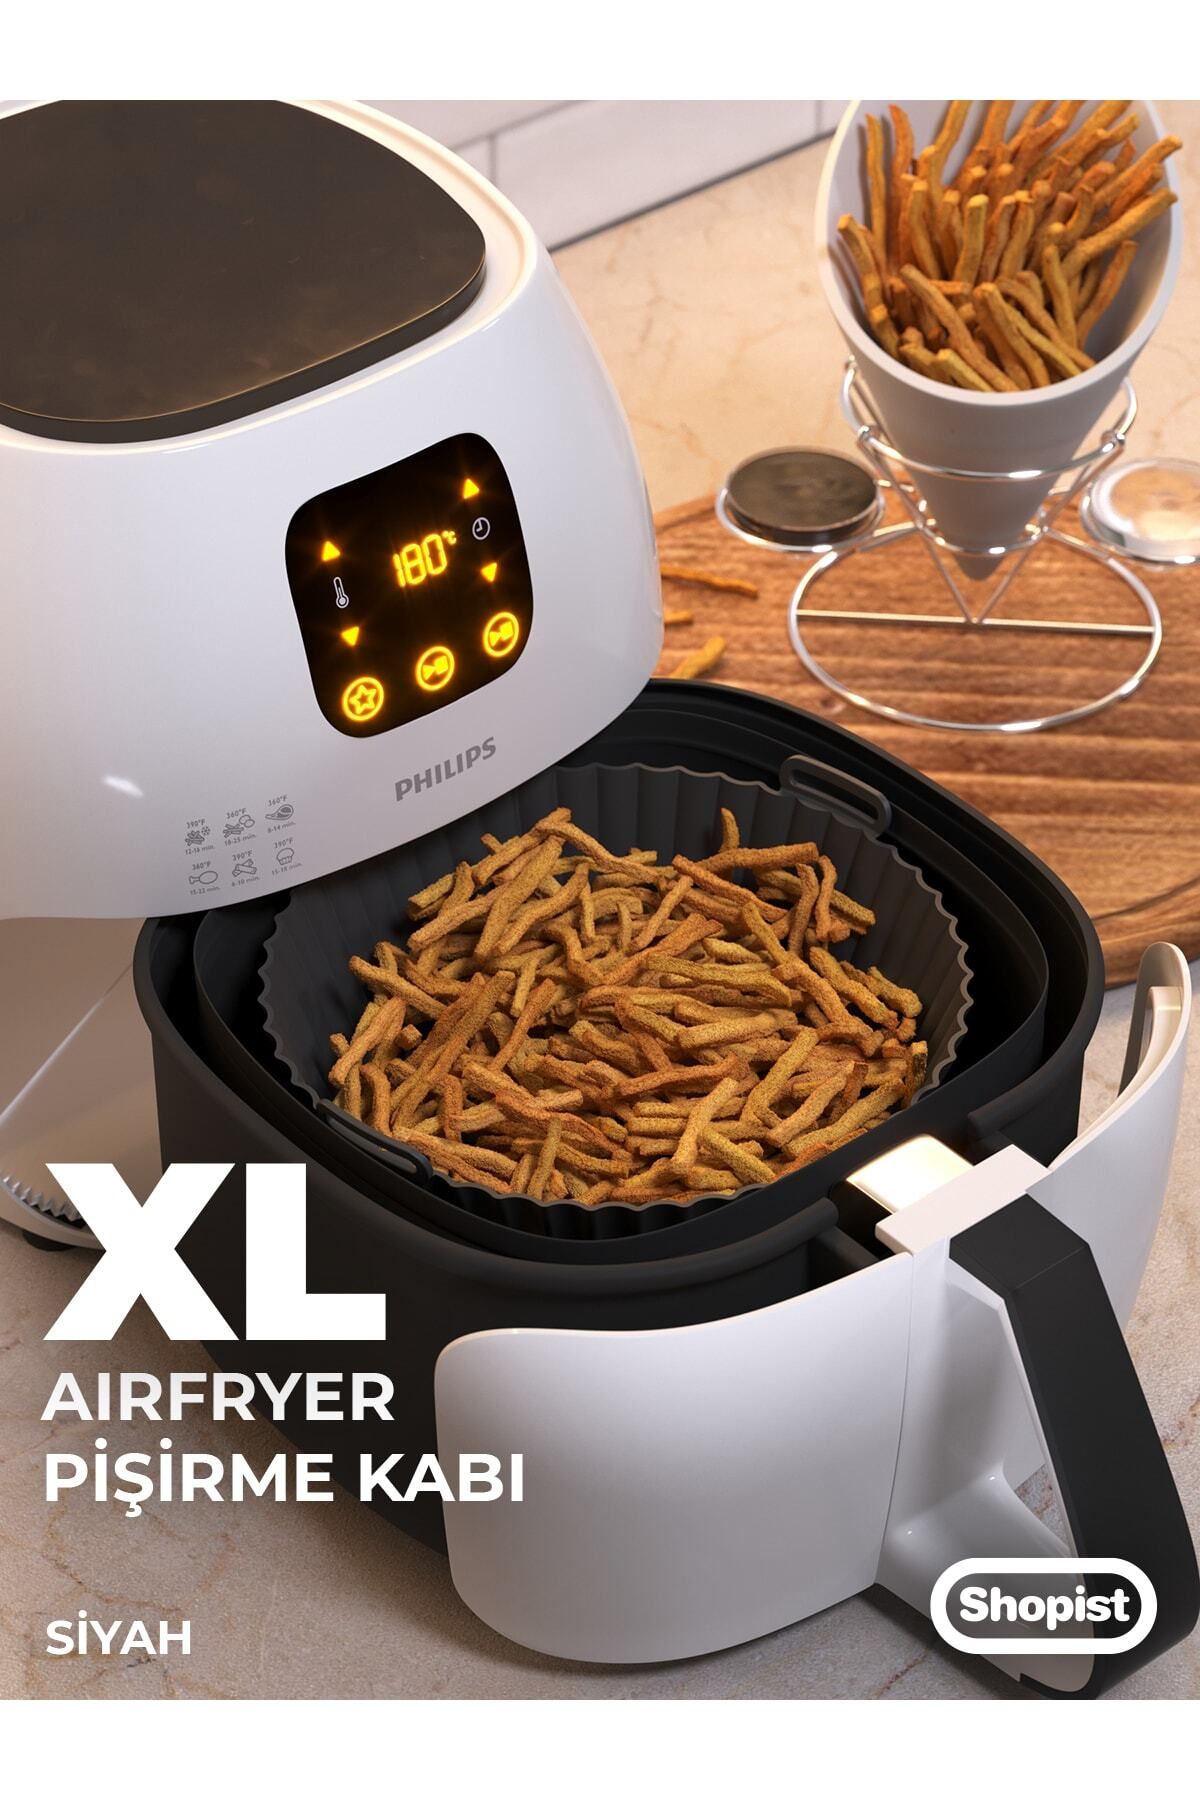 SHOPİST Xl-xxl Siyah Airfryer Silikon Pişirme Kabı 6litre Ve Üzeri Bpa Free Airfryer Pişirme Kağıdı Kalıbı